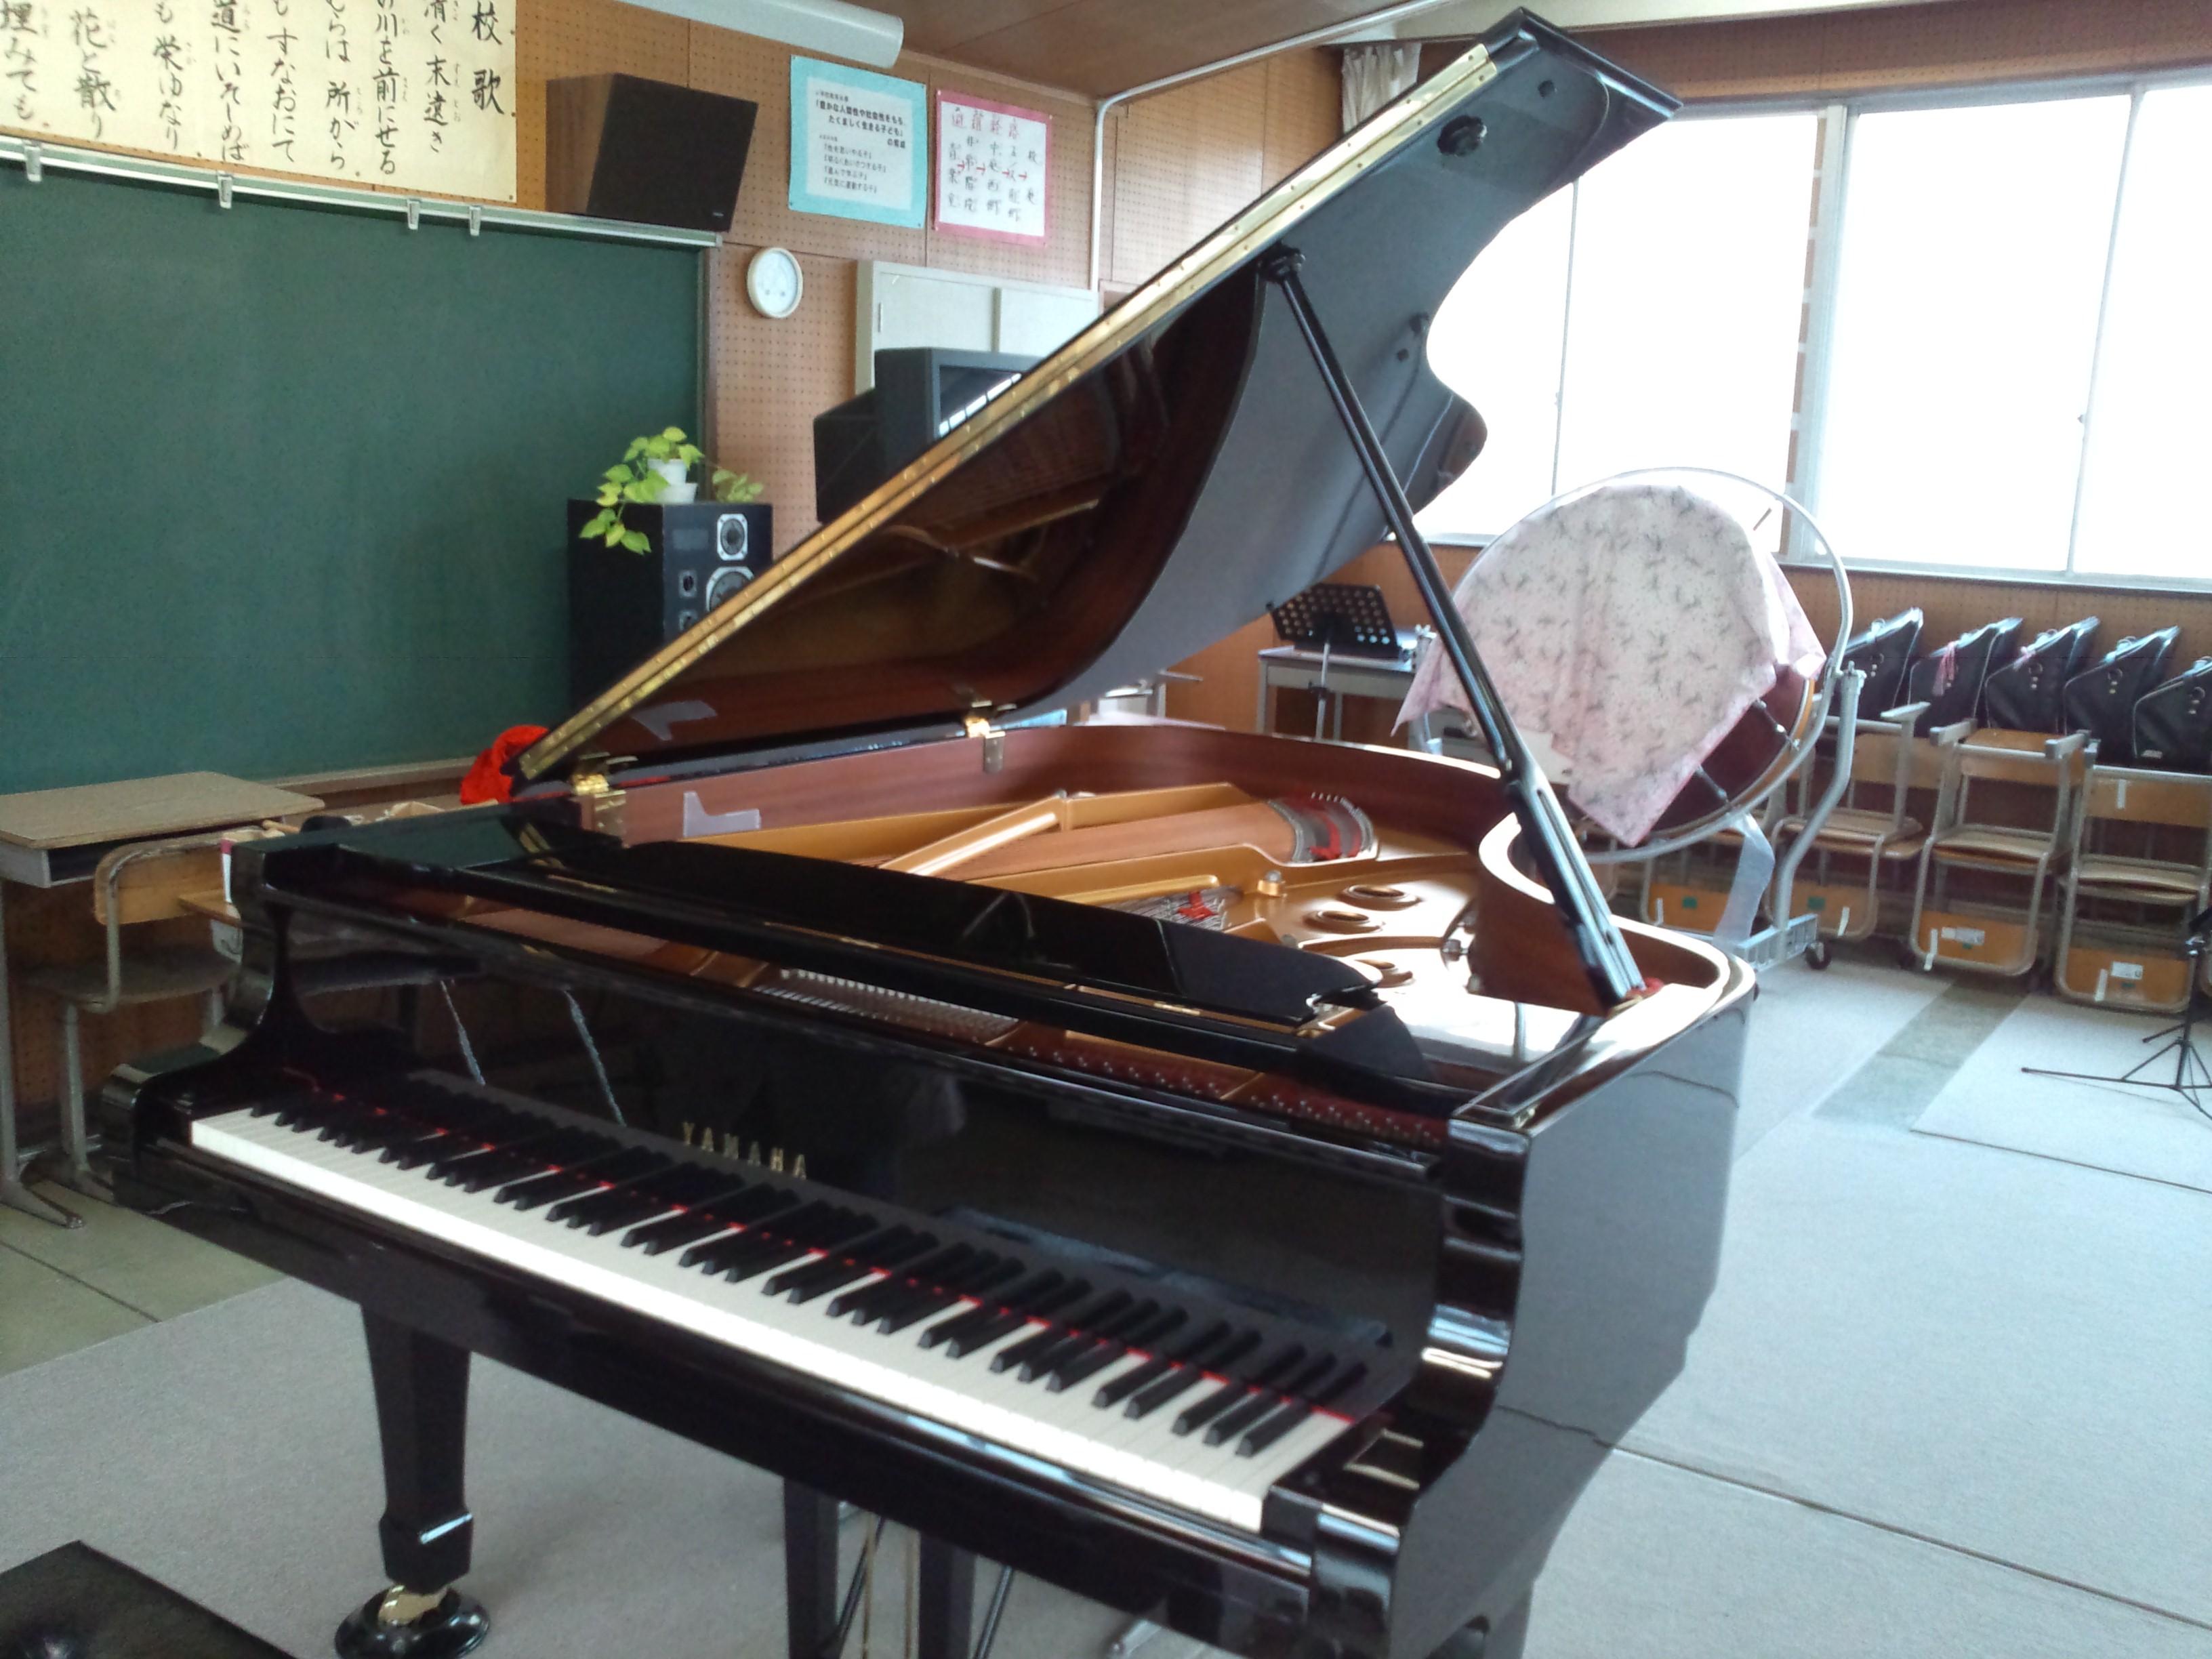 村上小学校にグランド・ピアノ寄贈 - 坂城町長 山村ひろし のブログ